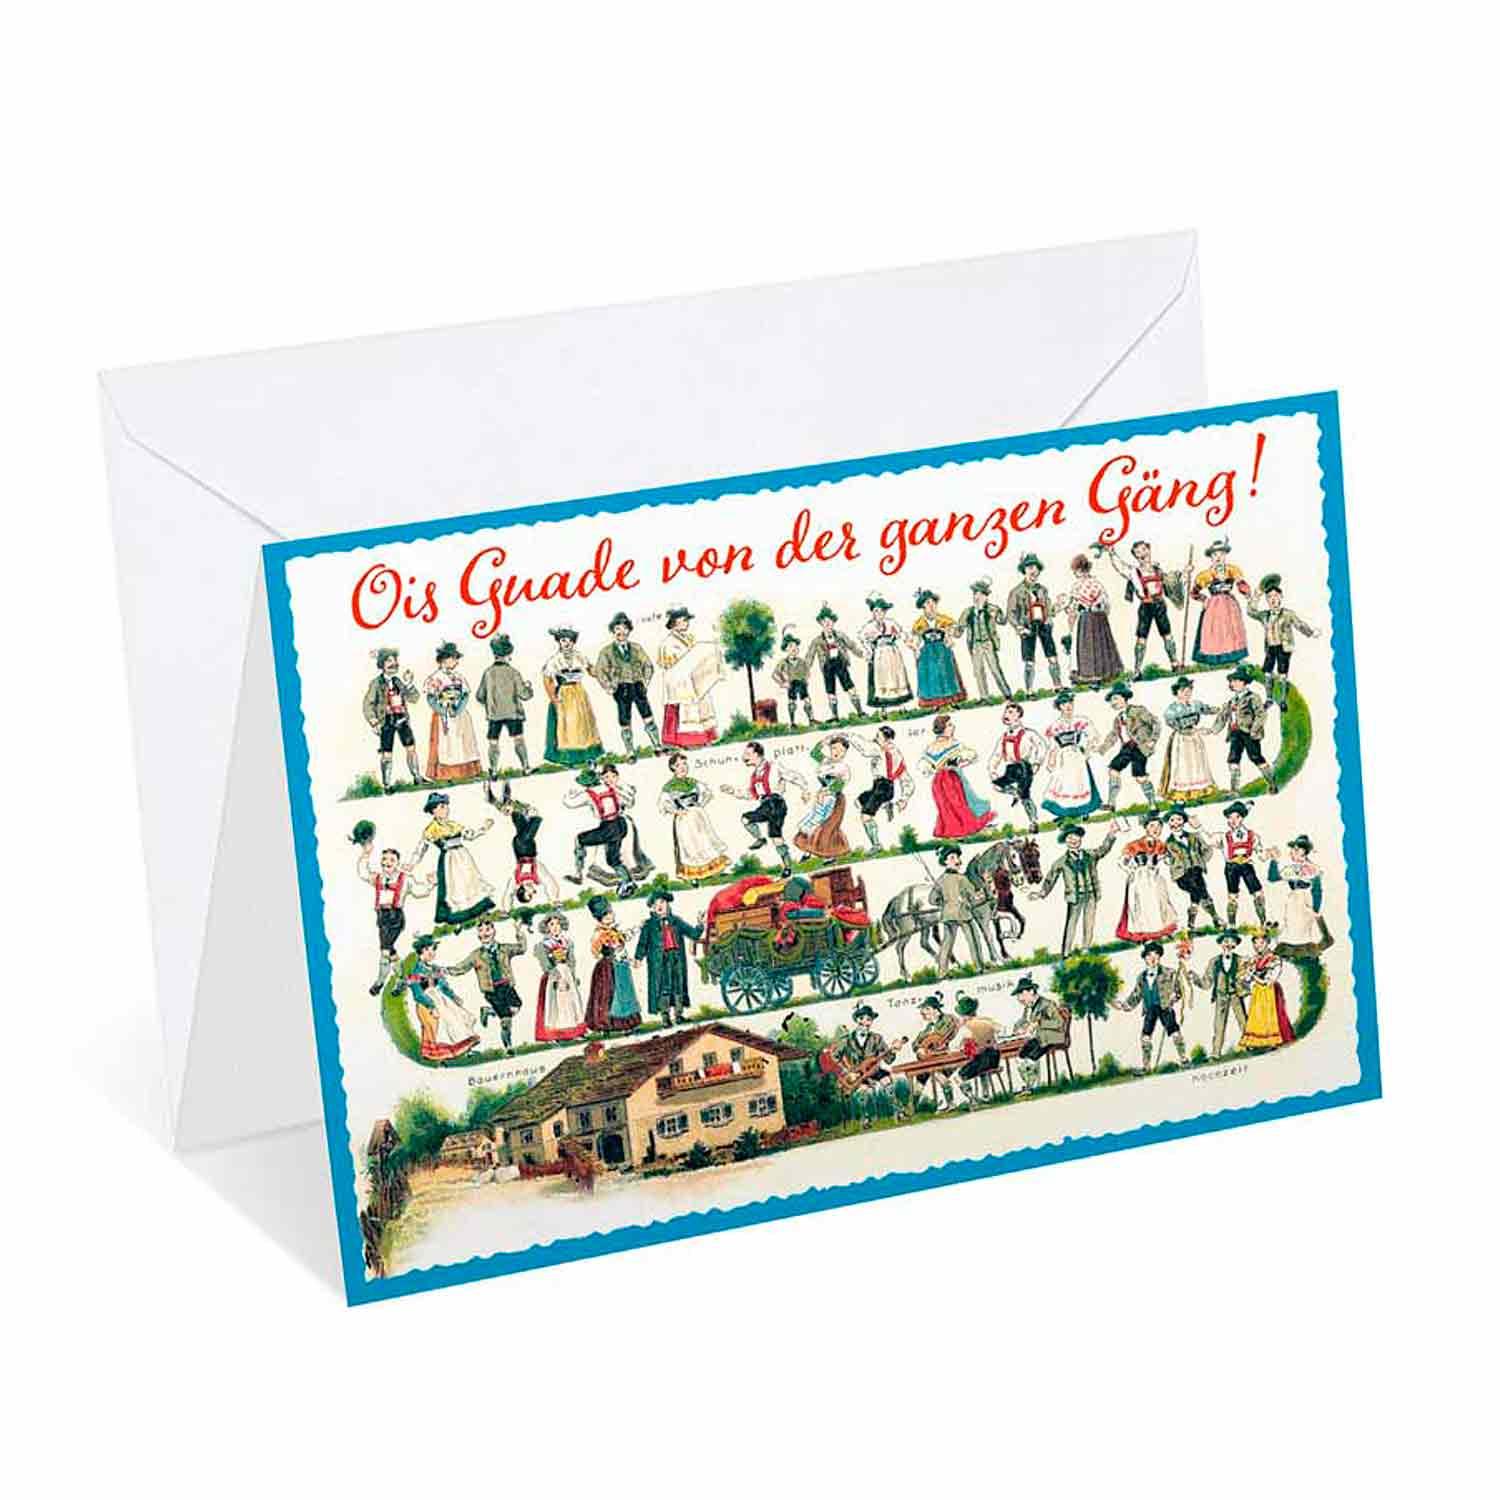 Geburtstagskarte "Ois Guade von der ganzen Gäng!" - bavariashop - mei LebensGfui